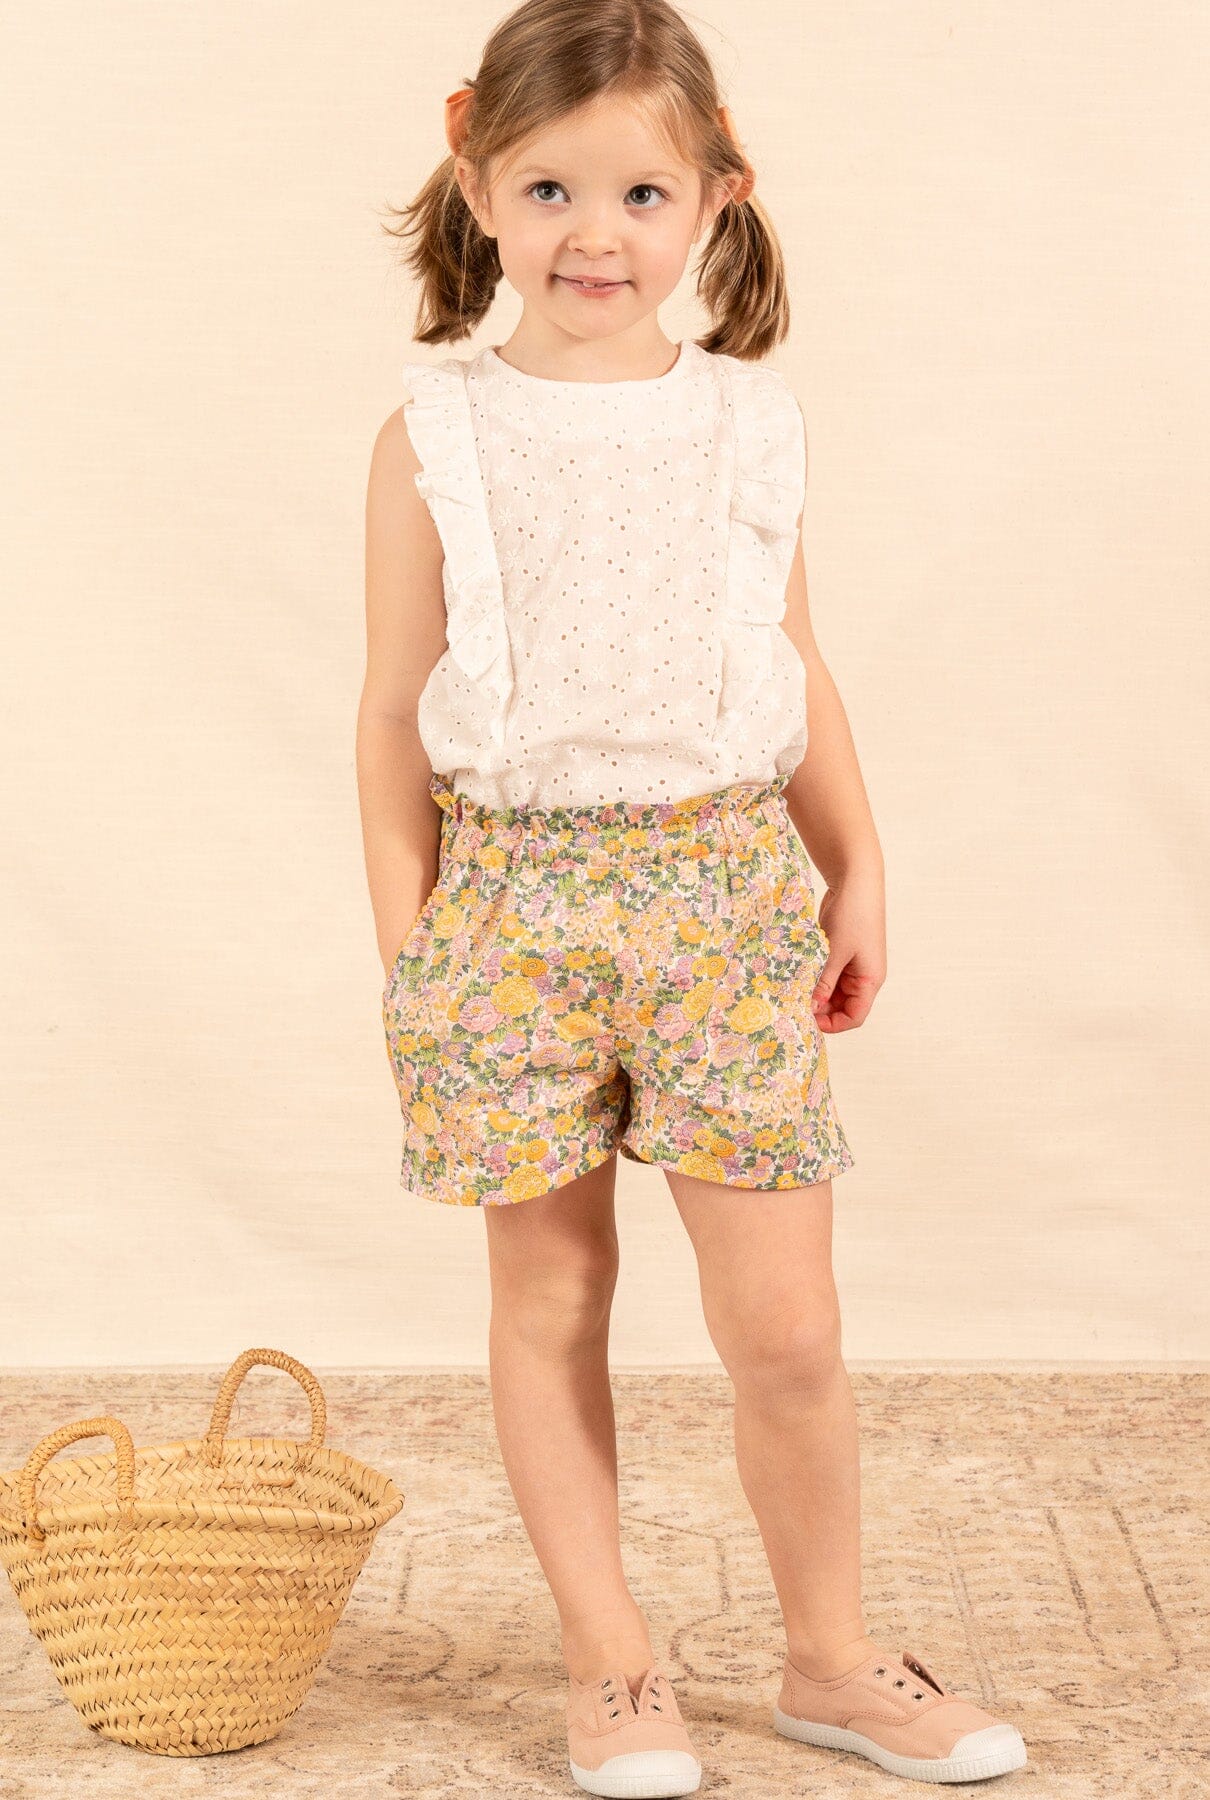 Alice Top Eyelet Daisy Off-White Kids Clothing Amaia London 